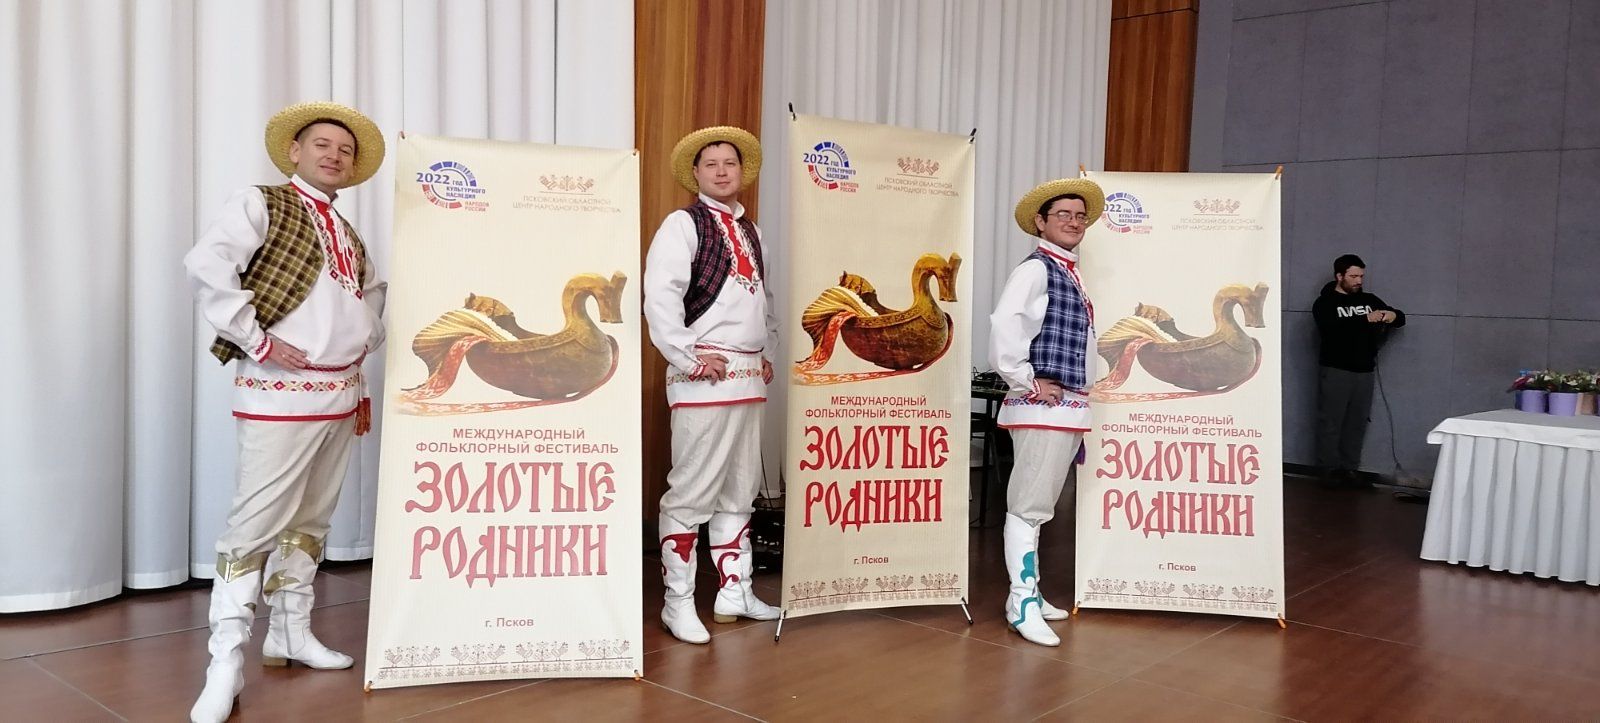 «Хлопцы Пасялковыя» – единственный коллектив из Беларуси, выступивший на основных мероприятиях фестиваля “Золотые родники” в Пскове